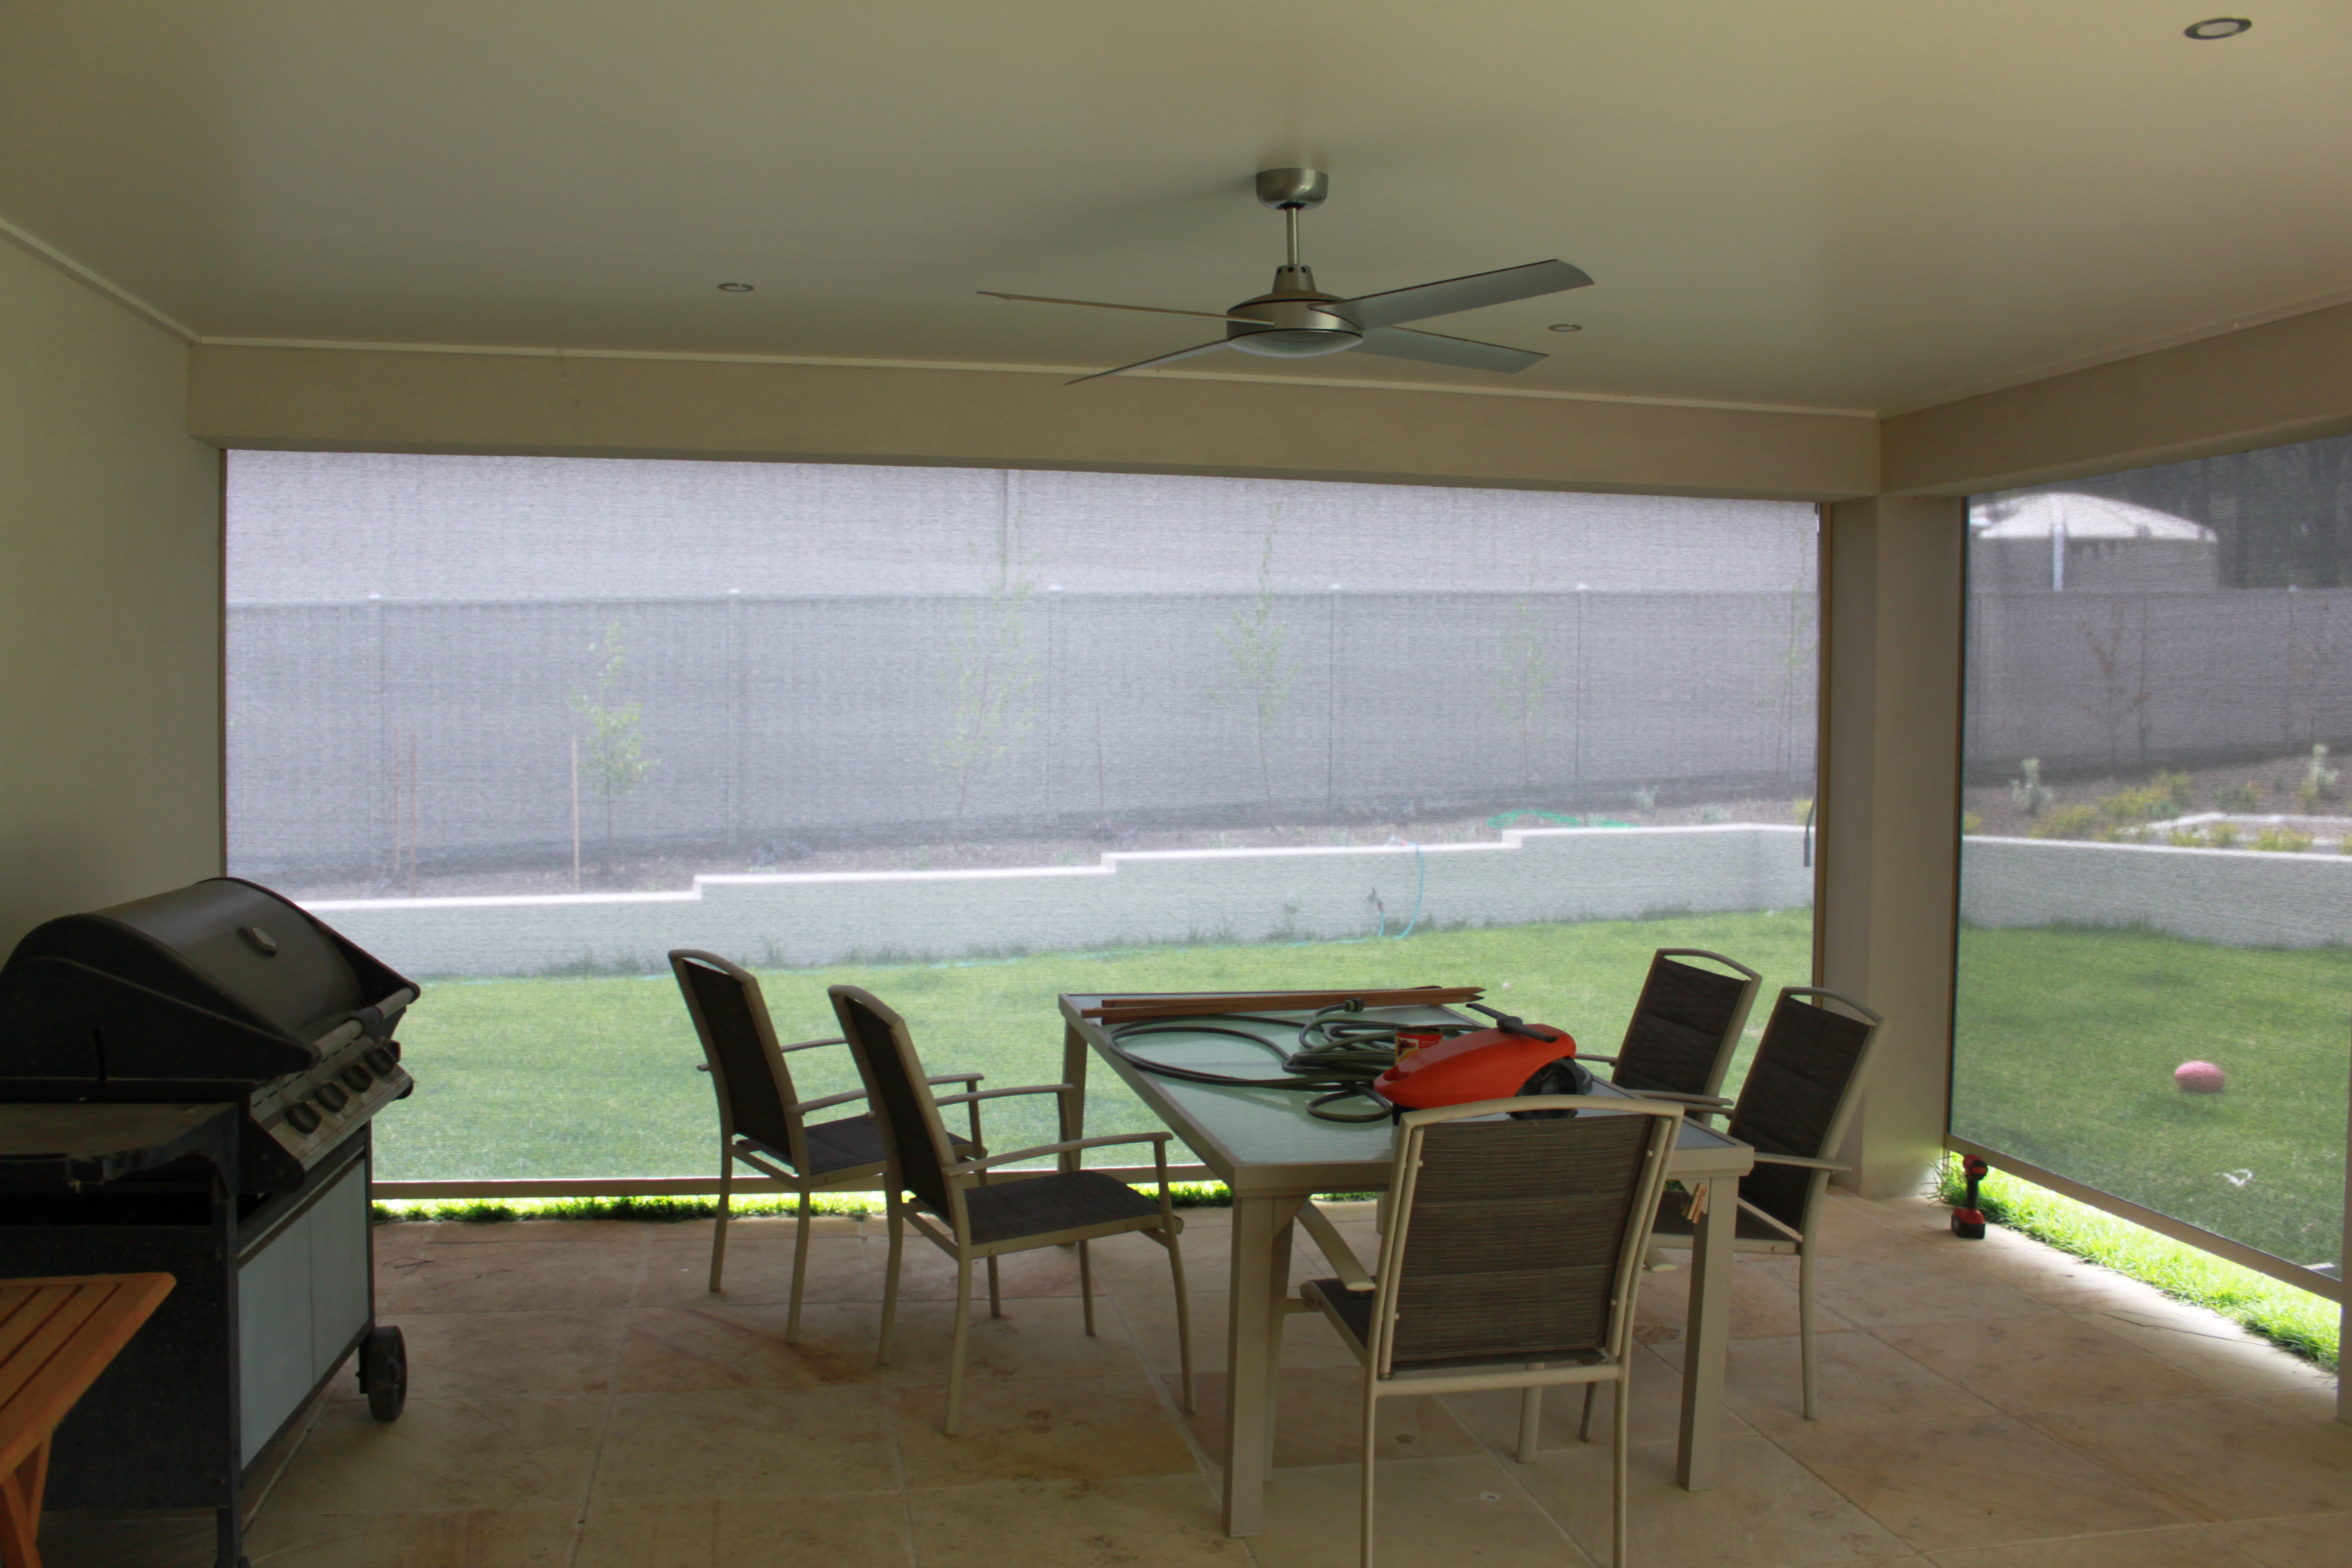 Zipscreen outdoor blinds